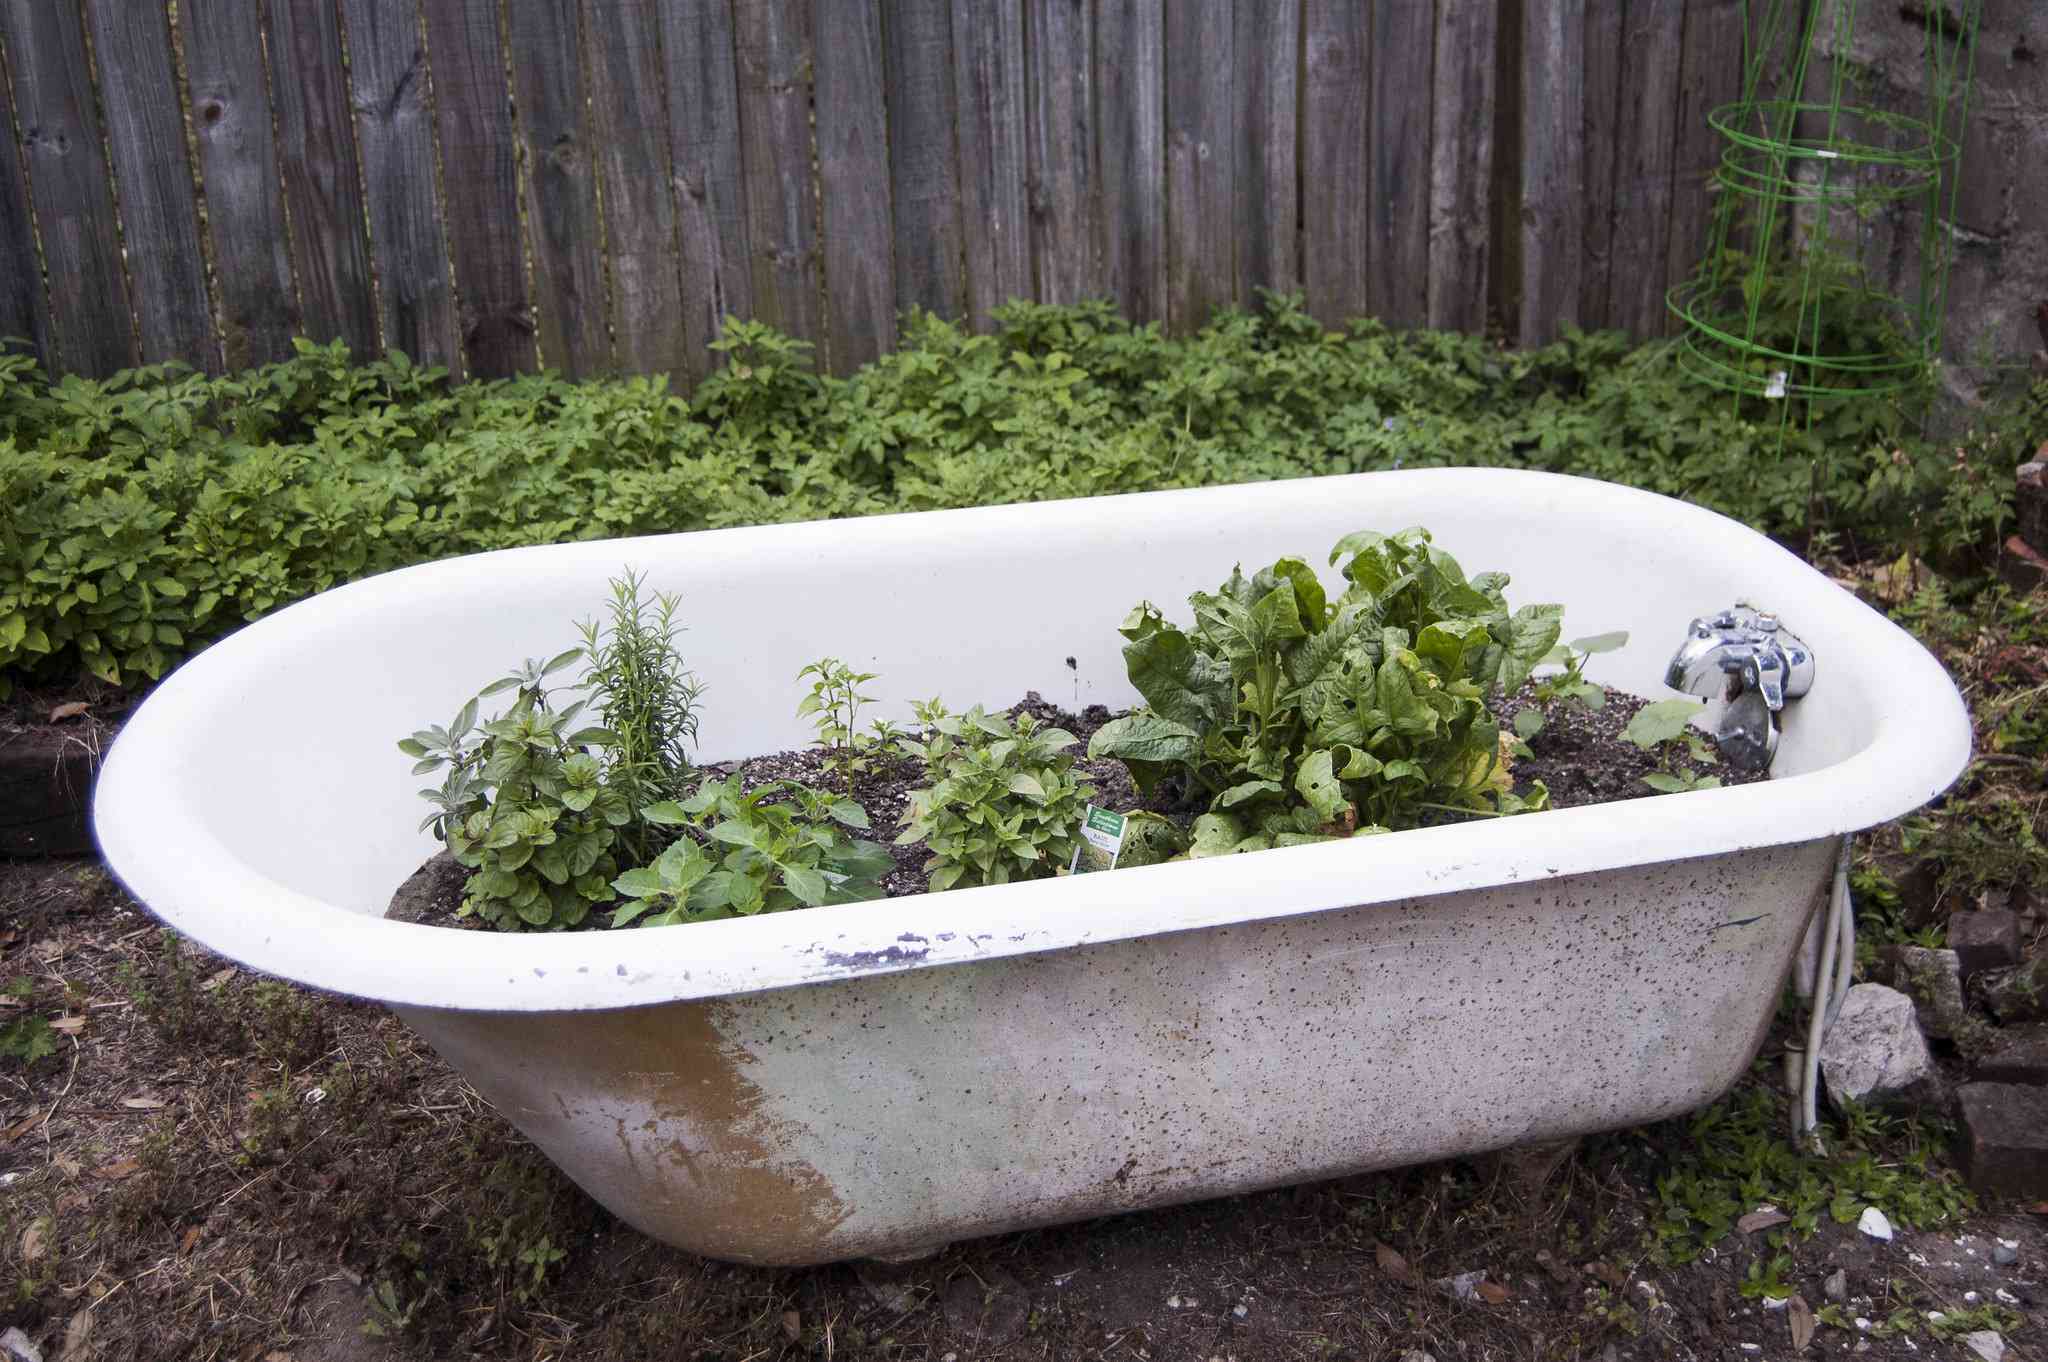 Una bañera reutilizada para un jardín en macetas